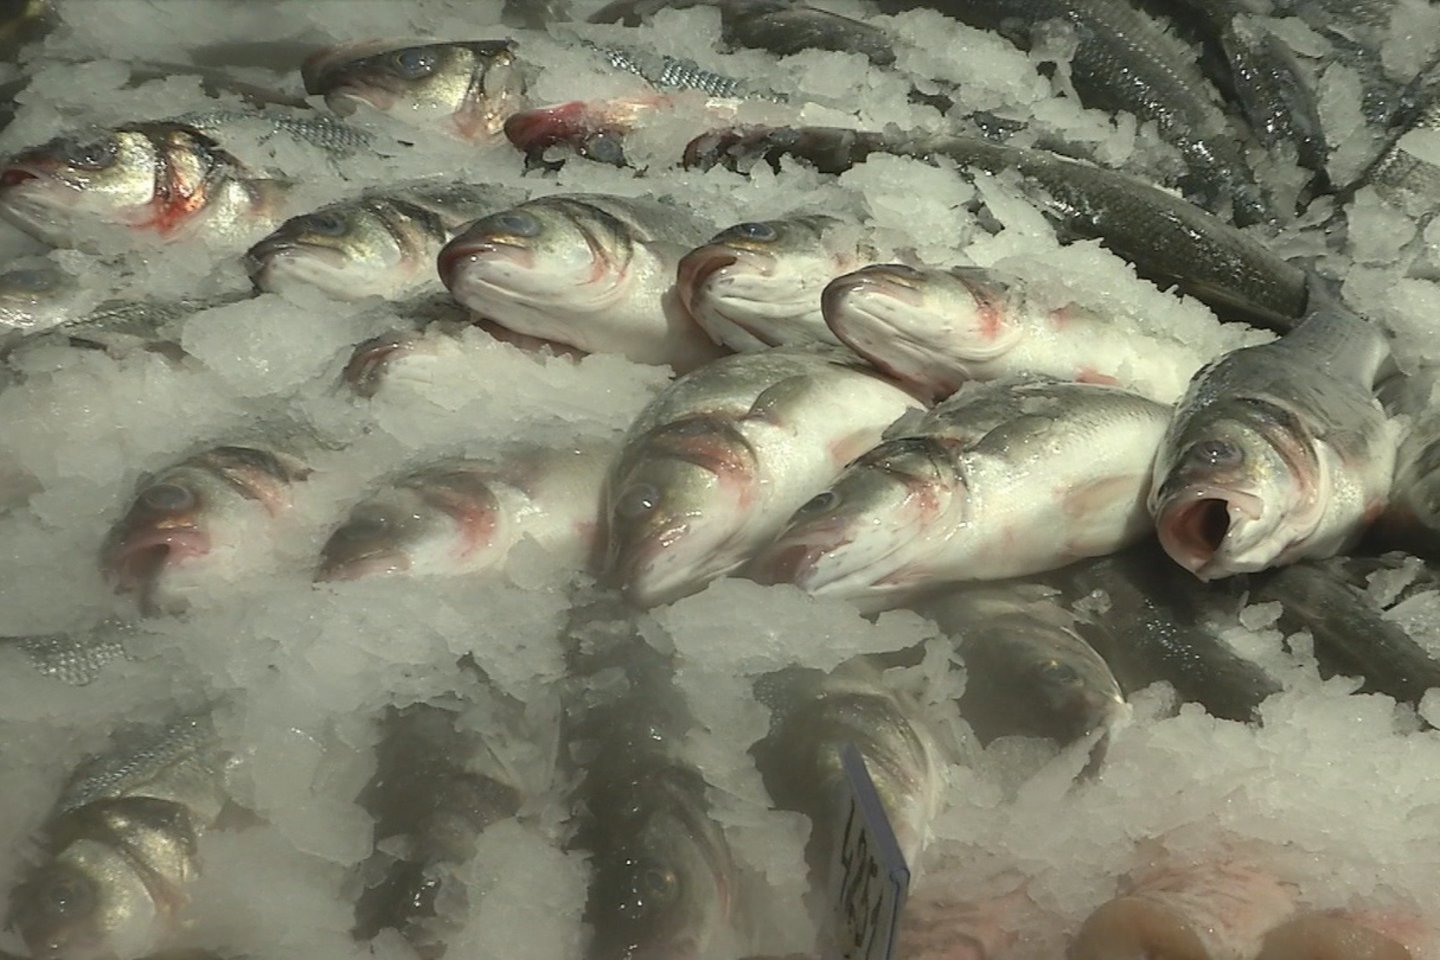  Prekybininkai pataria perkant žuvį žiūrėti, kad ji blizgėtų, būtų graži, žiaunos – raudonos.<br> Stop kadras